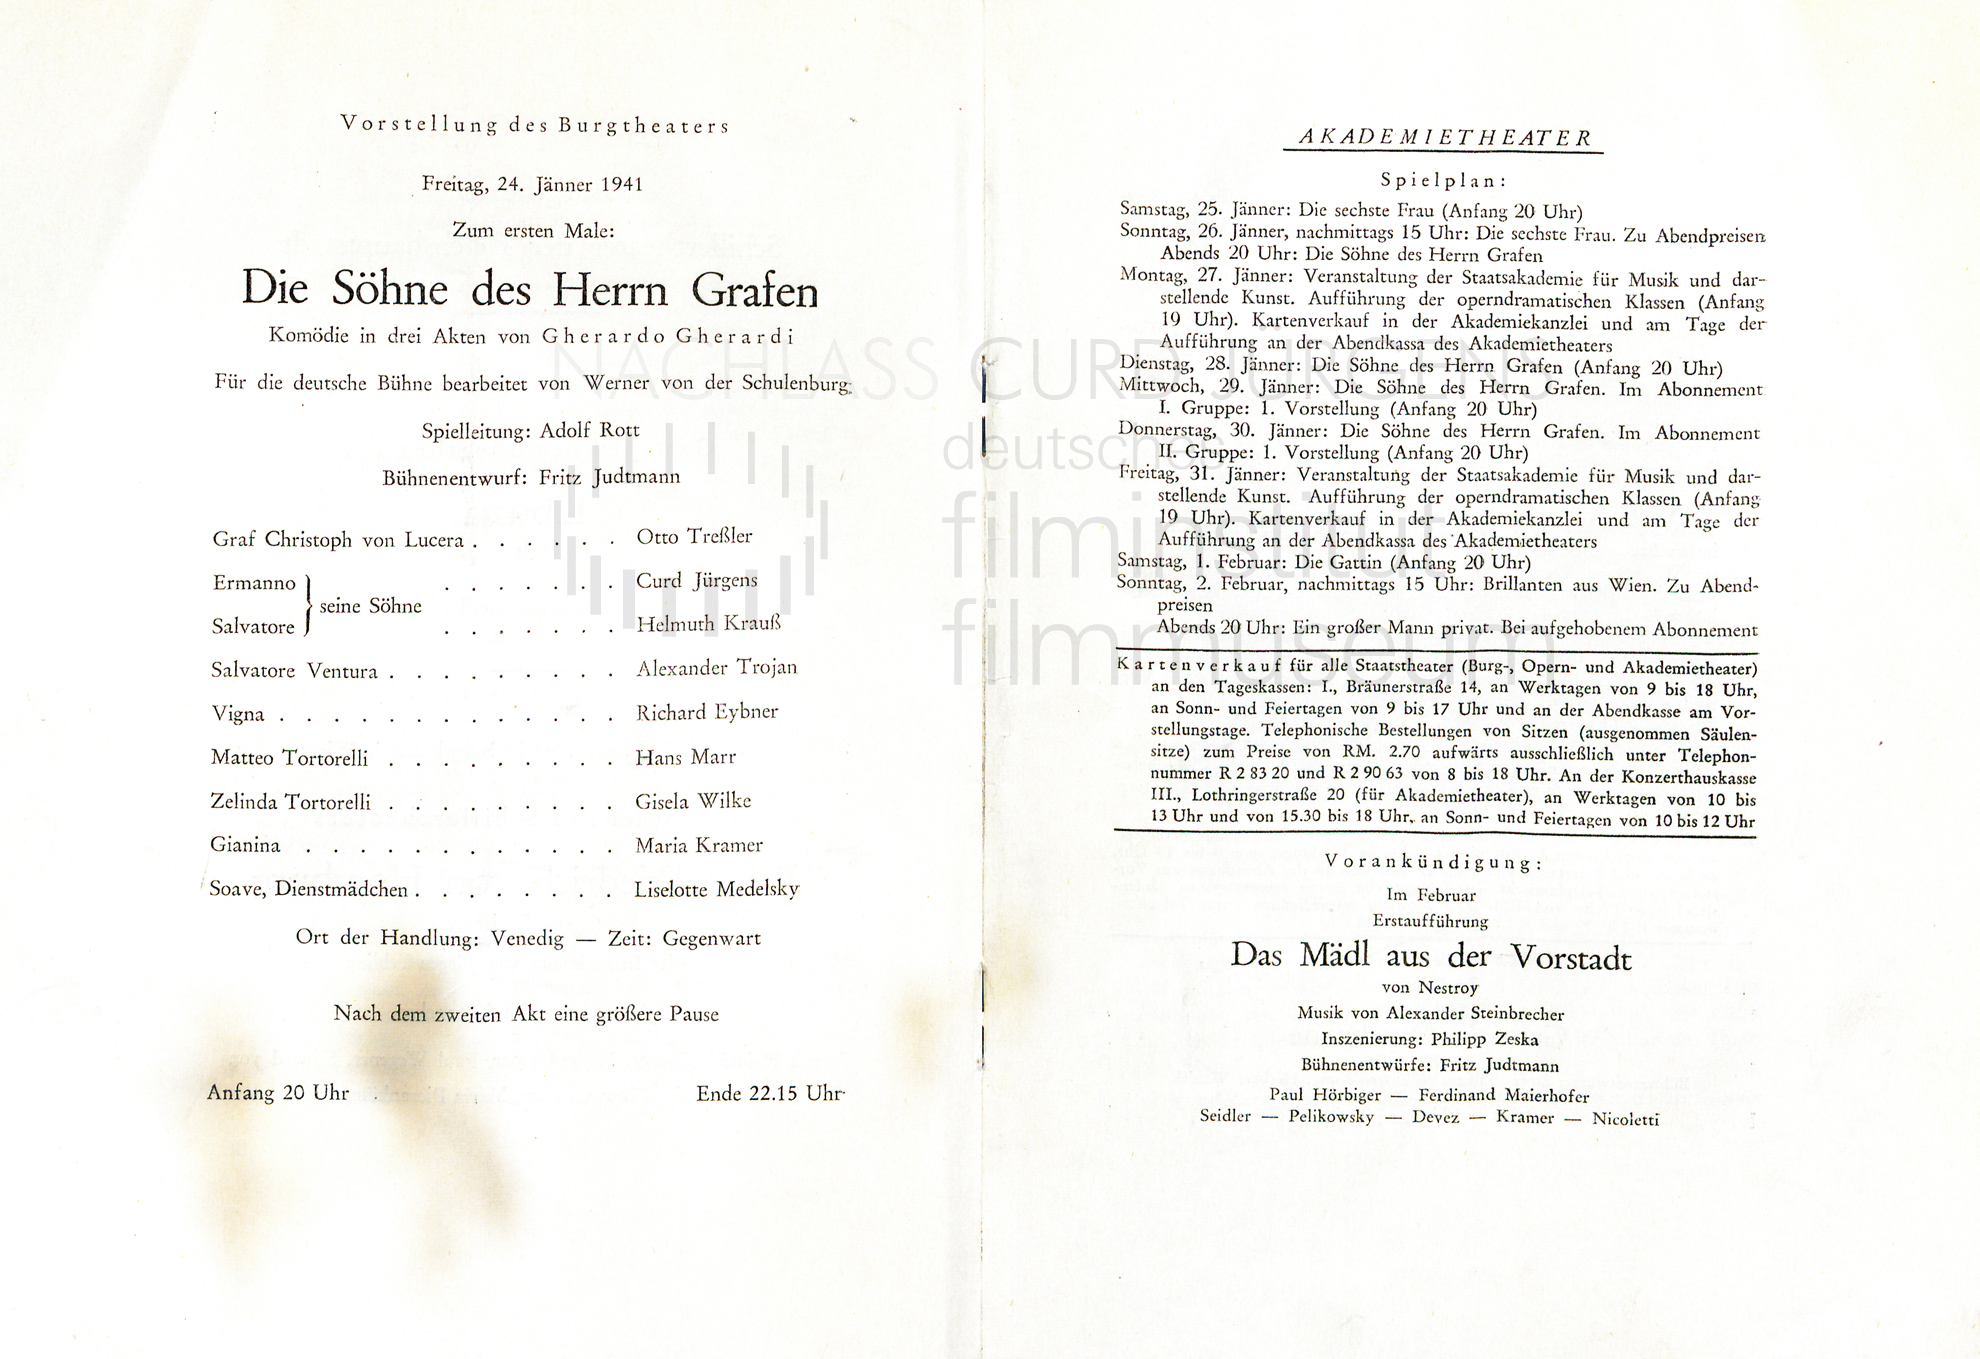 "Die Söhne des Herrn Grafen" Programm. Akademietheater, Wien, 24.1.1941